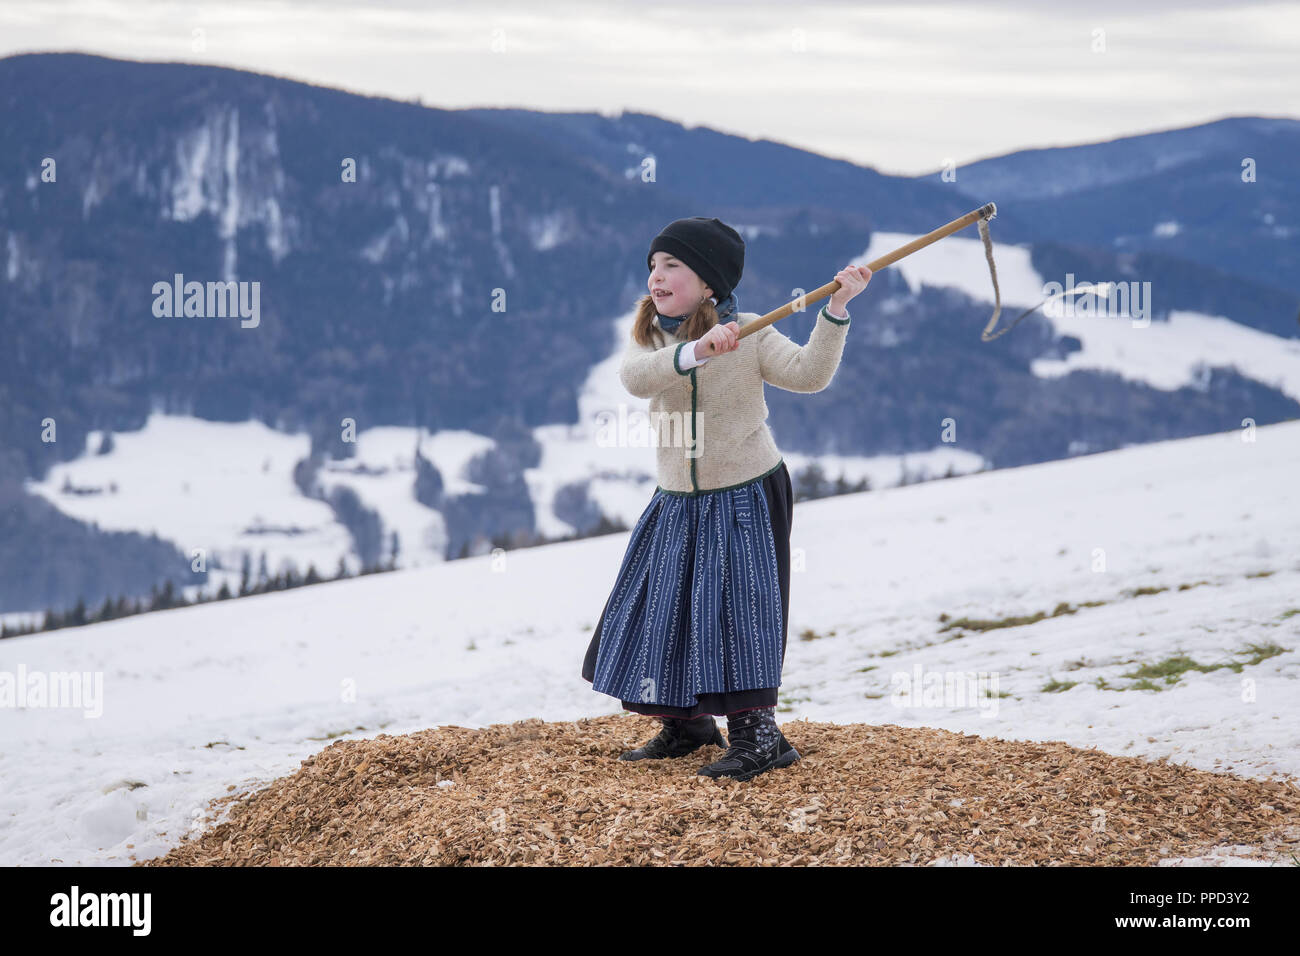 L'Aperschnalzen whipcracking (concurrentiel) dans le Rupertwinkel, est une tradition à dur hiver, Berchtesgaden-campagne, Haute-bavière Stoisser-Achental. Concours à la fissuration fouet Strobl Alm - Hoegl avec les participants des municipalités de colère - Aufham et Bad Reichenhall. Banque D'Images